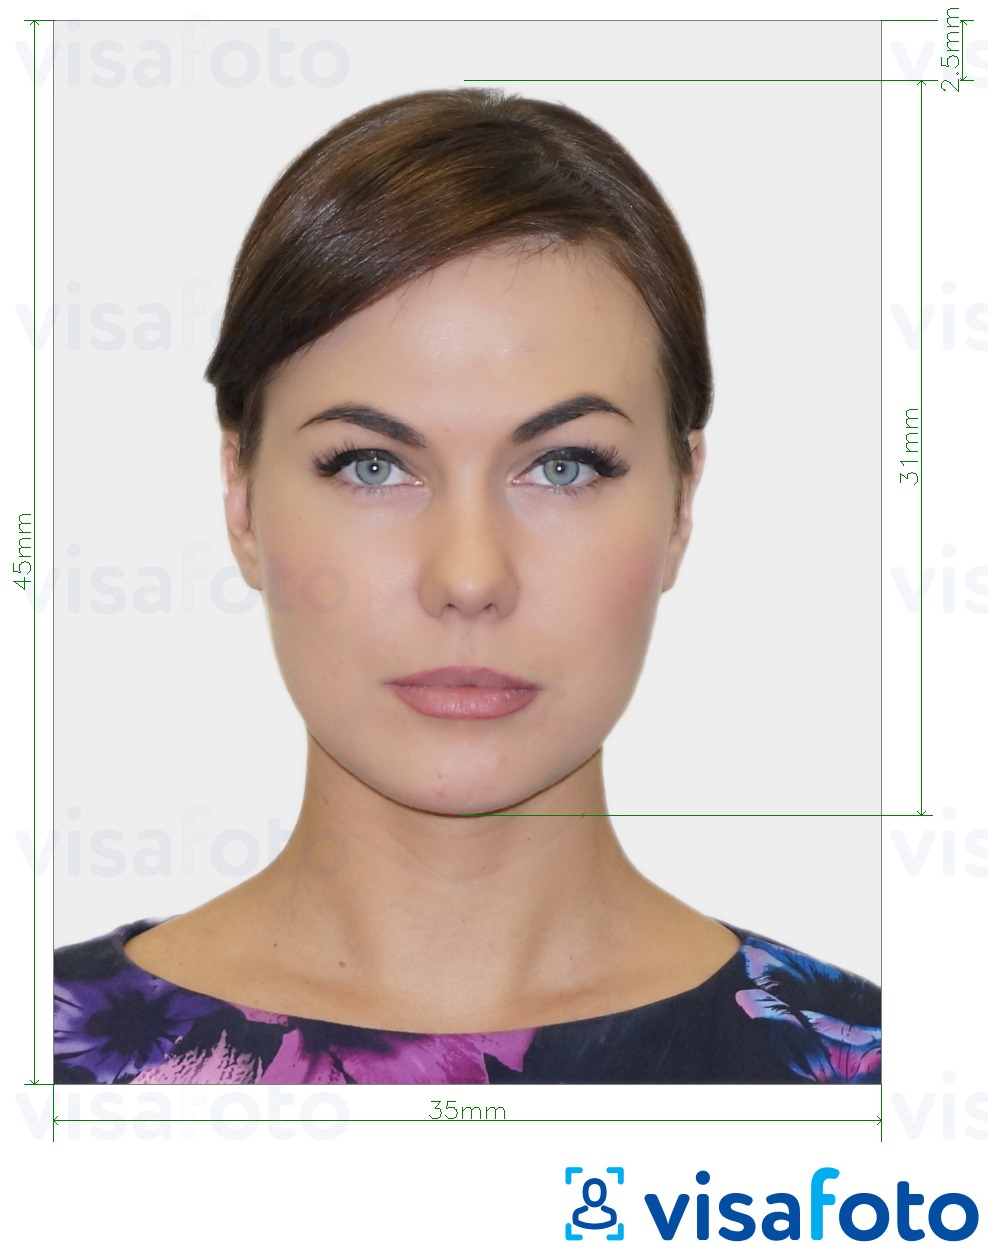 Ejemplo de foto para Bélgica Visa 35x45 mm (3,5x4,5 cm) con la especificación del tamaño exacto